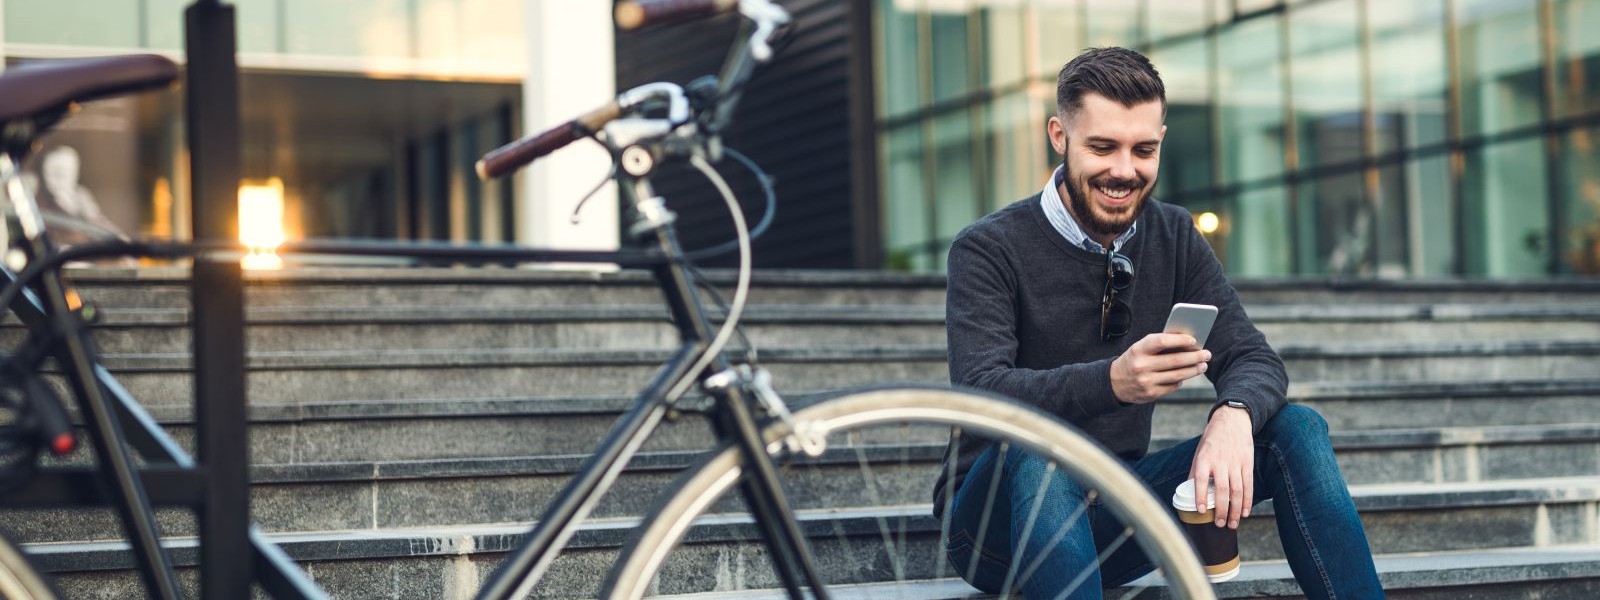 Ein etwas 30 jähriger Mann sitzt auf einer Treppe vor einem Bürogebäude. Er schaut auf sein Handy und lächelt. Vor ihm steht ein Fahrrad.